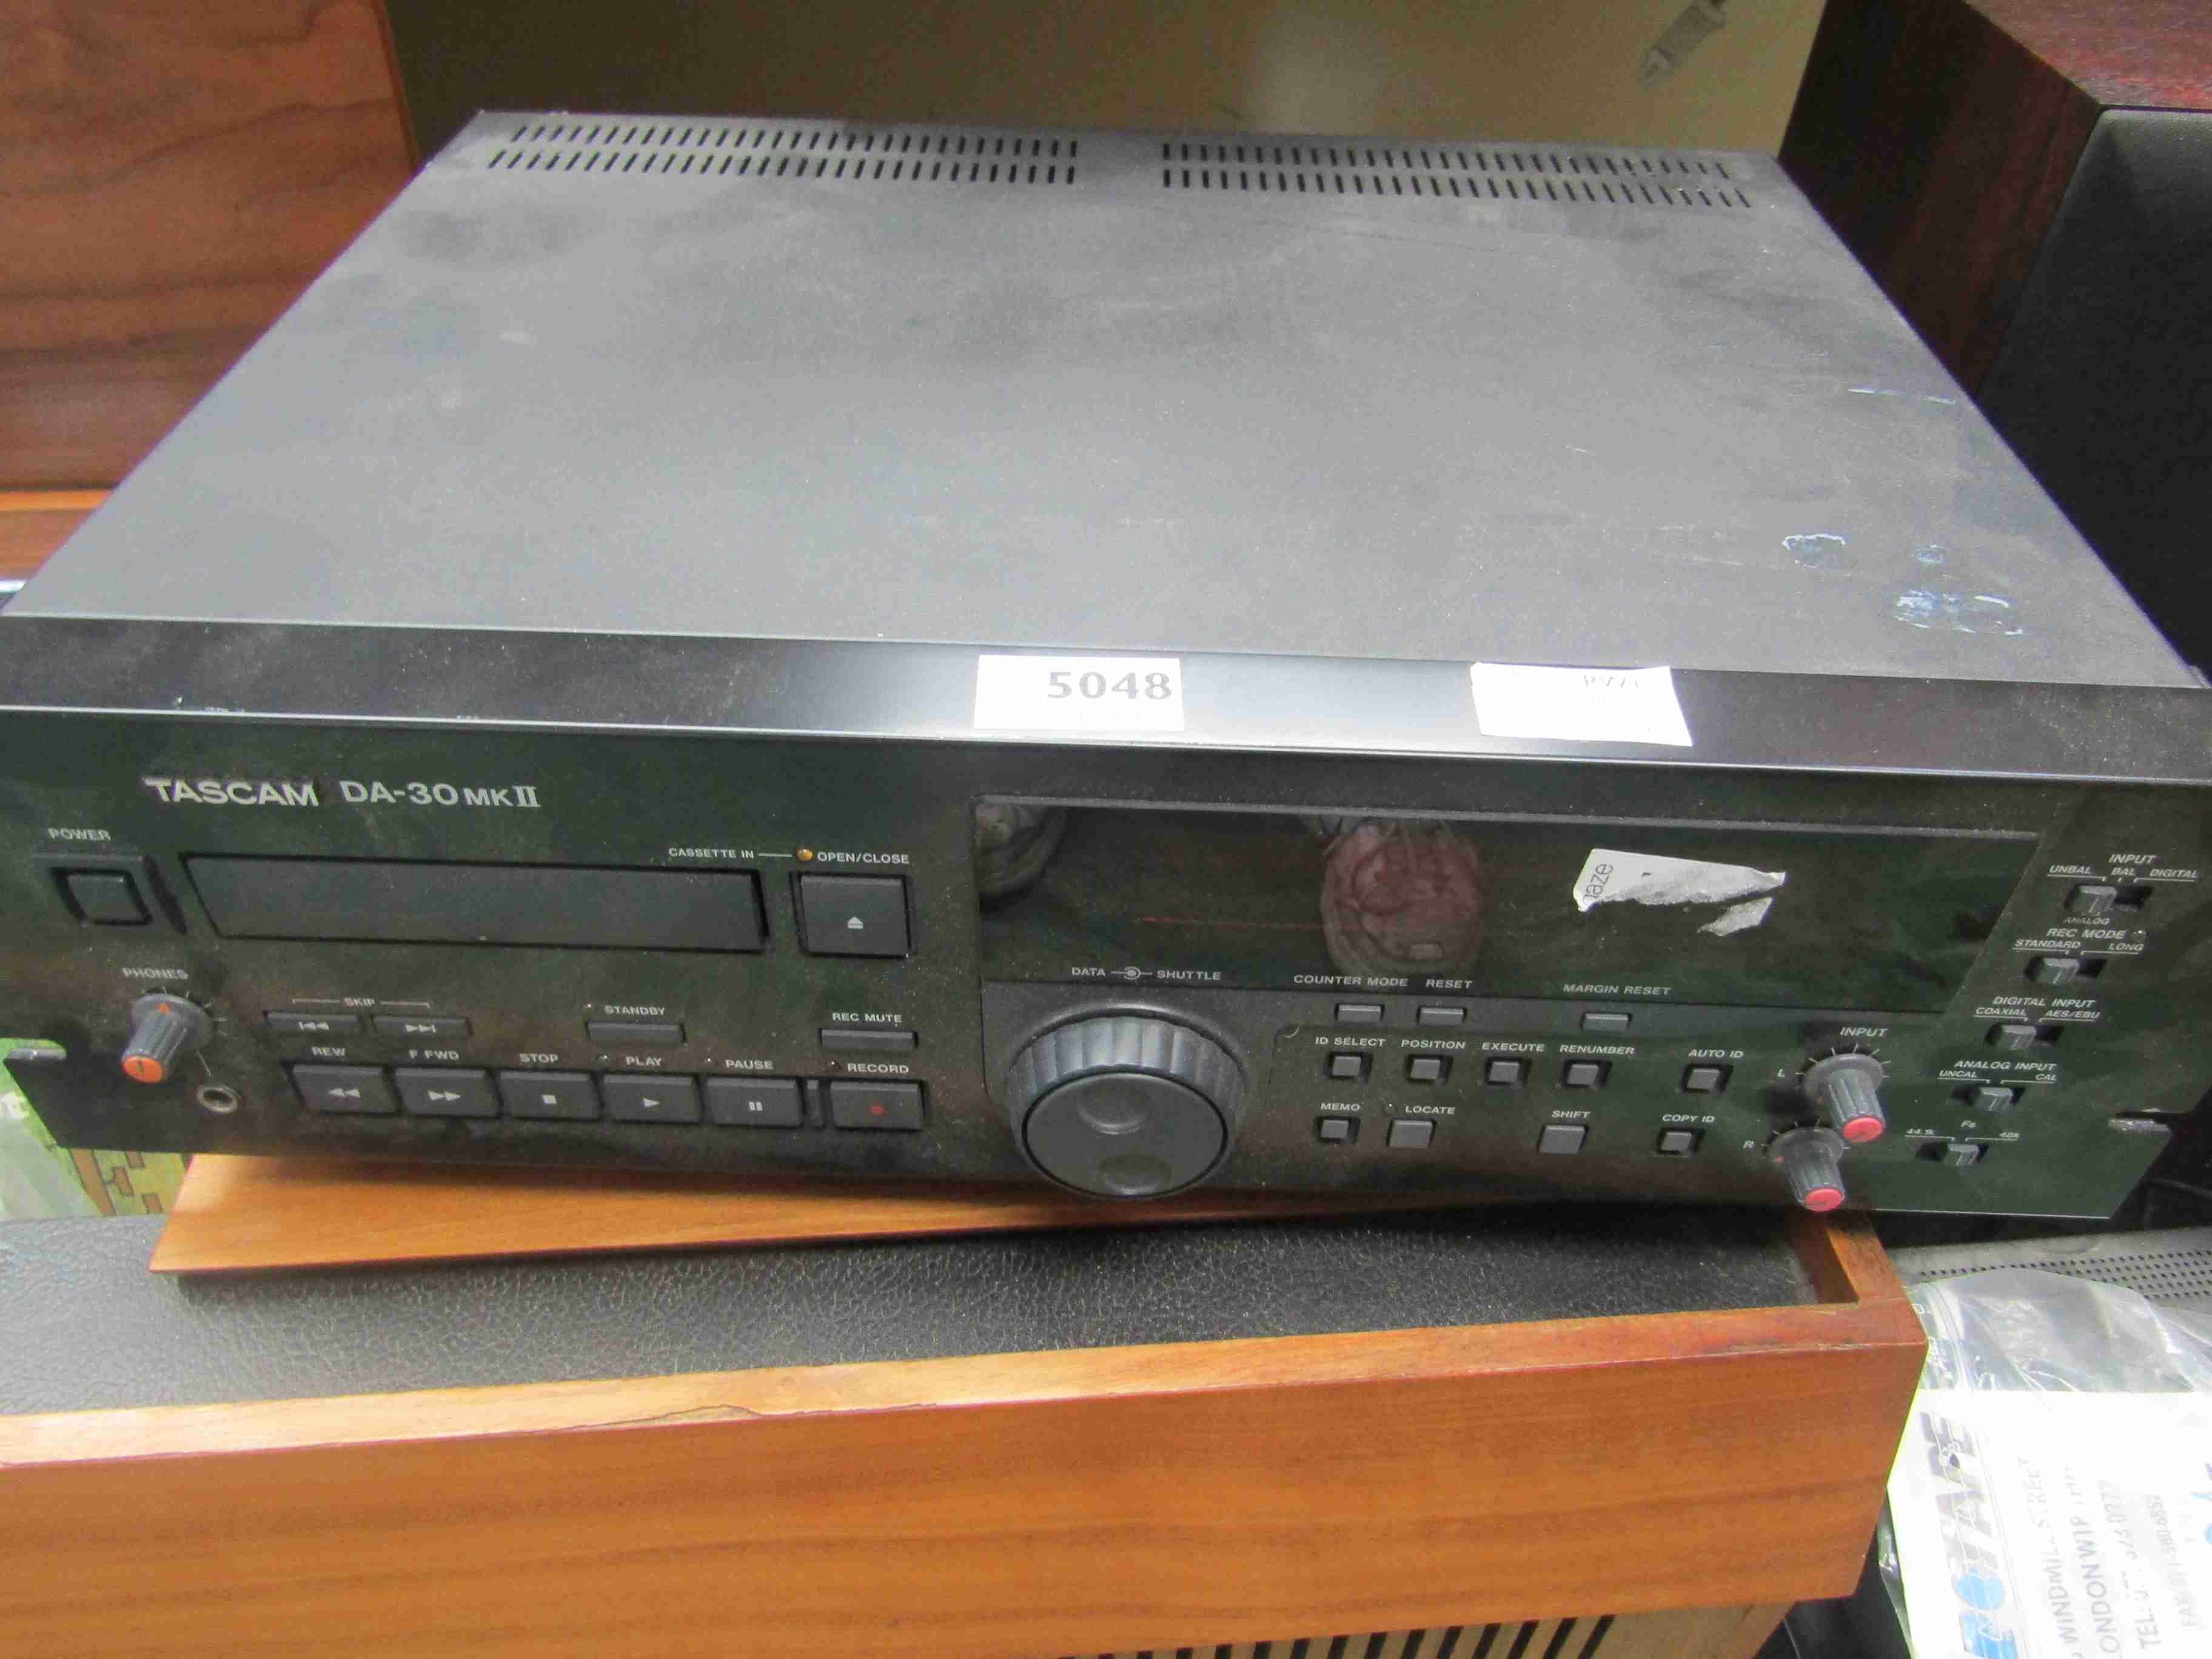 A Tascam DA-30 Mk II tape recorder